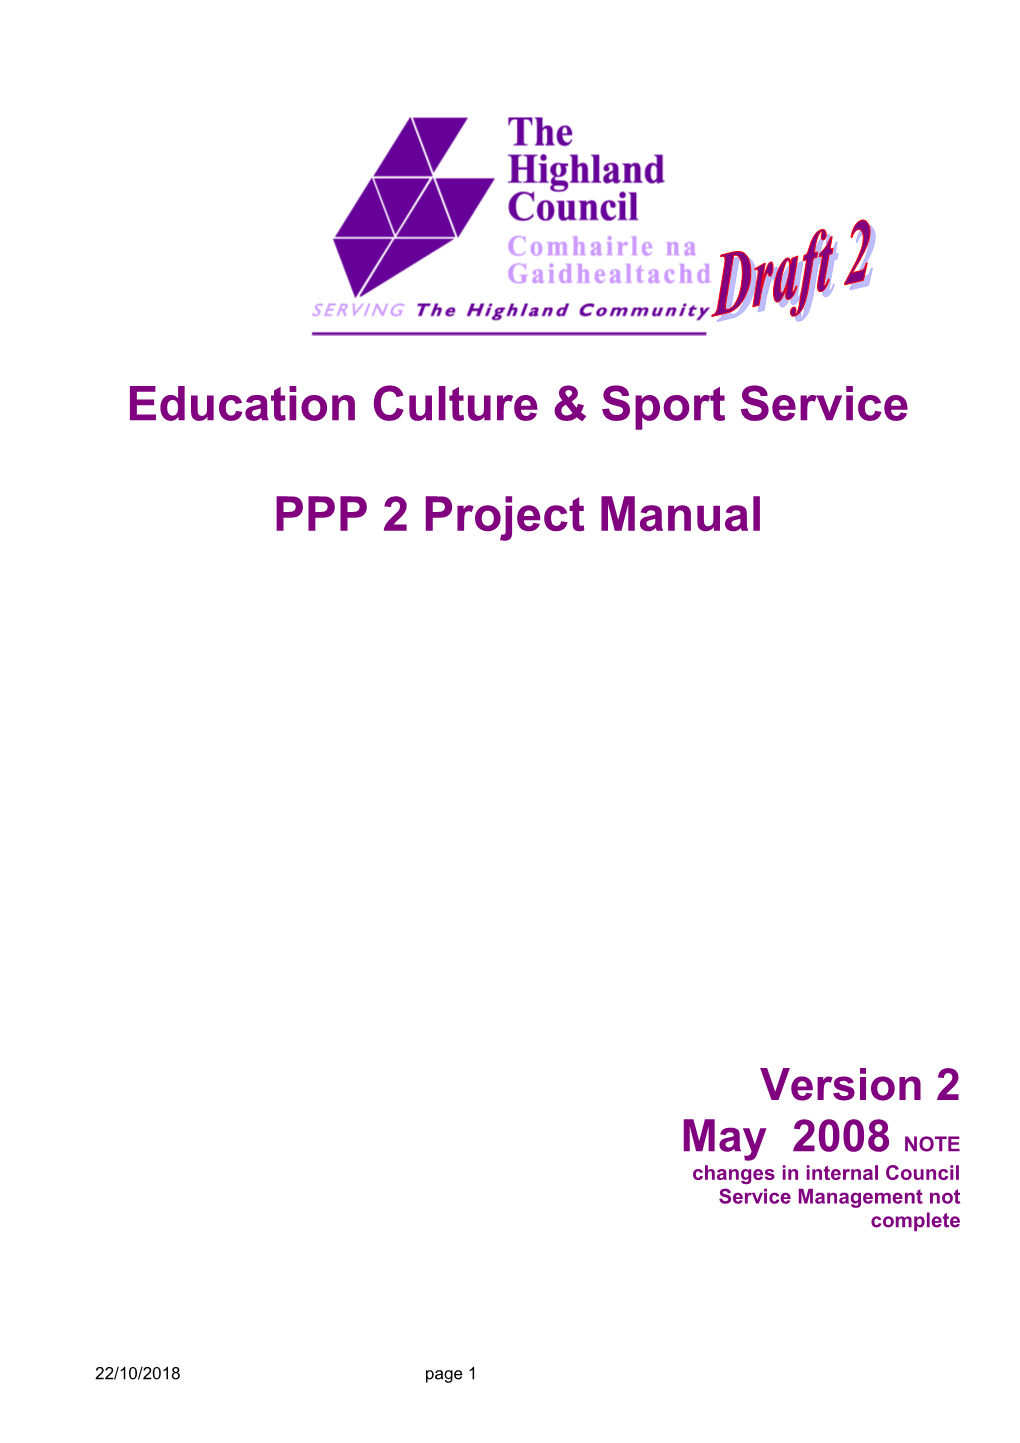 Education Culture & Sport Service